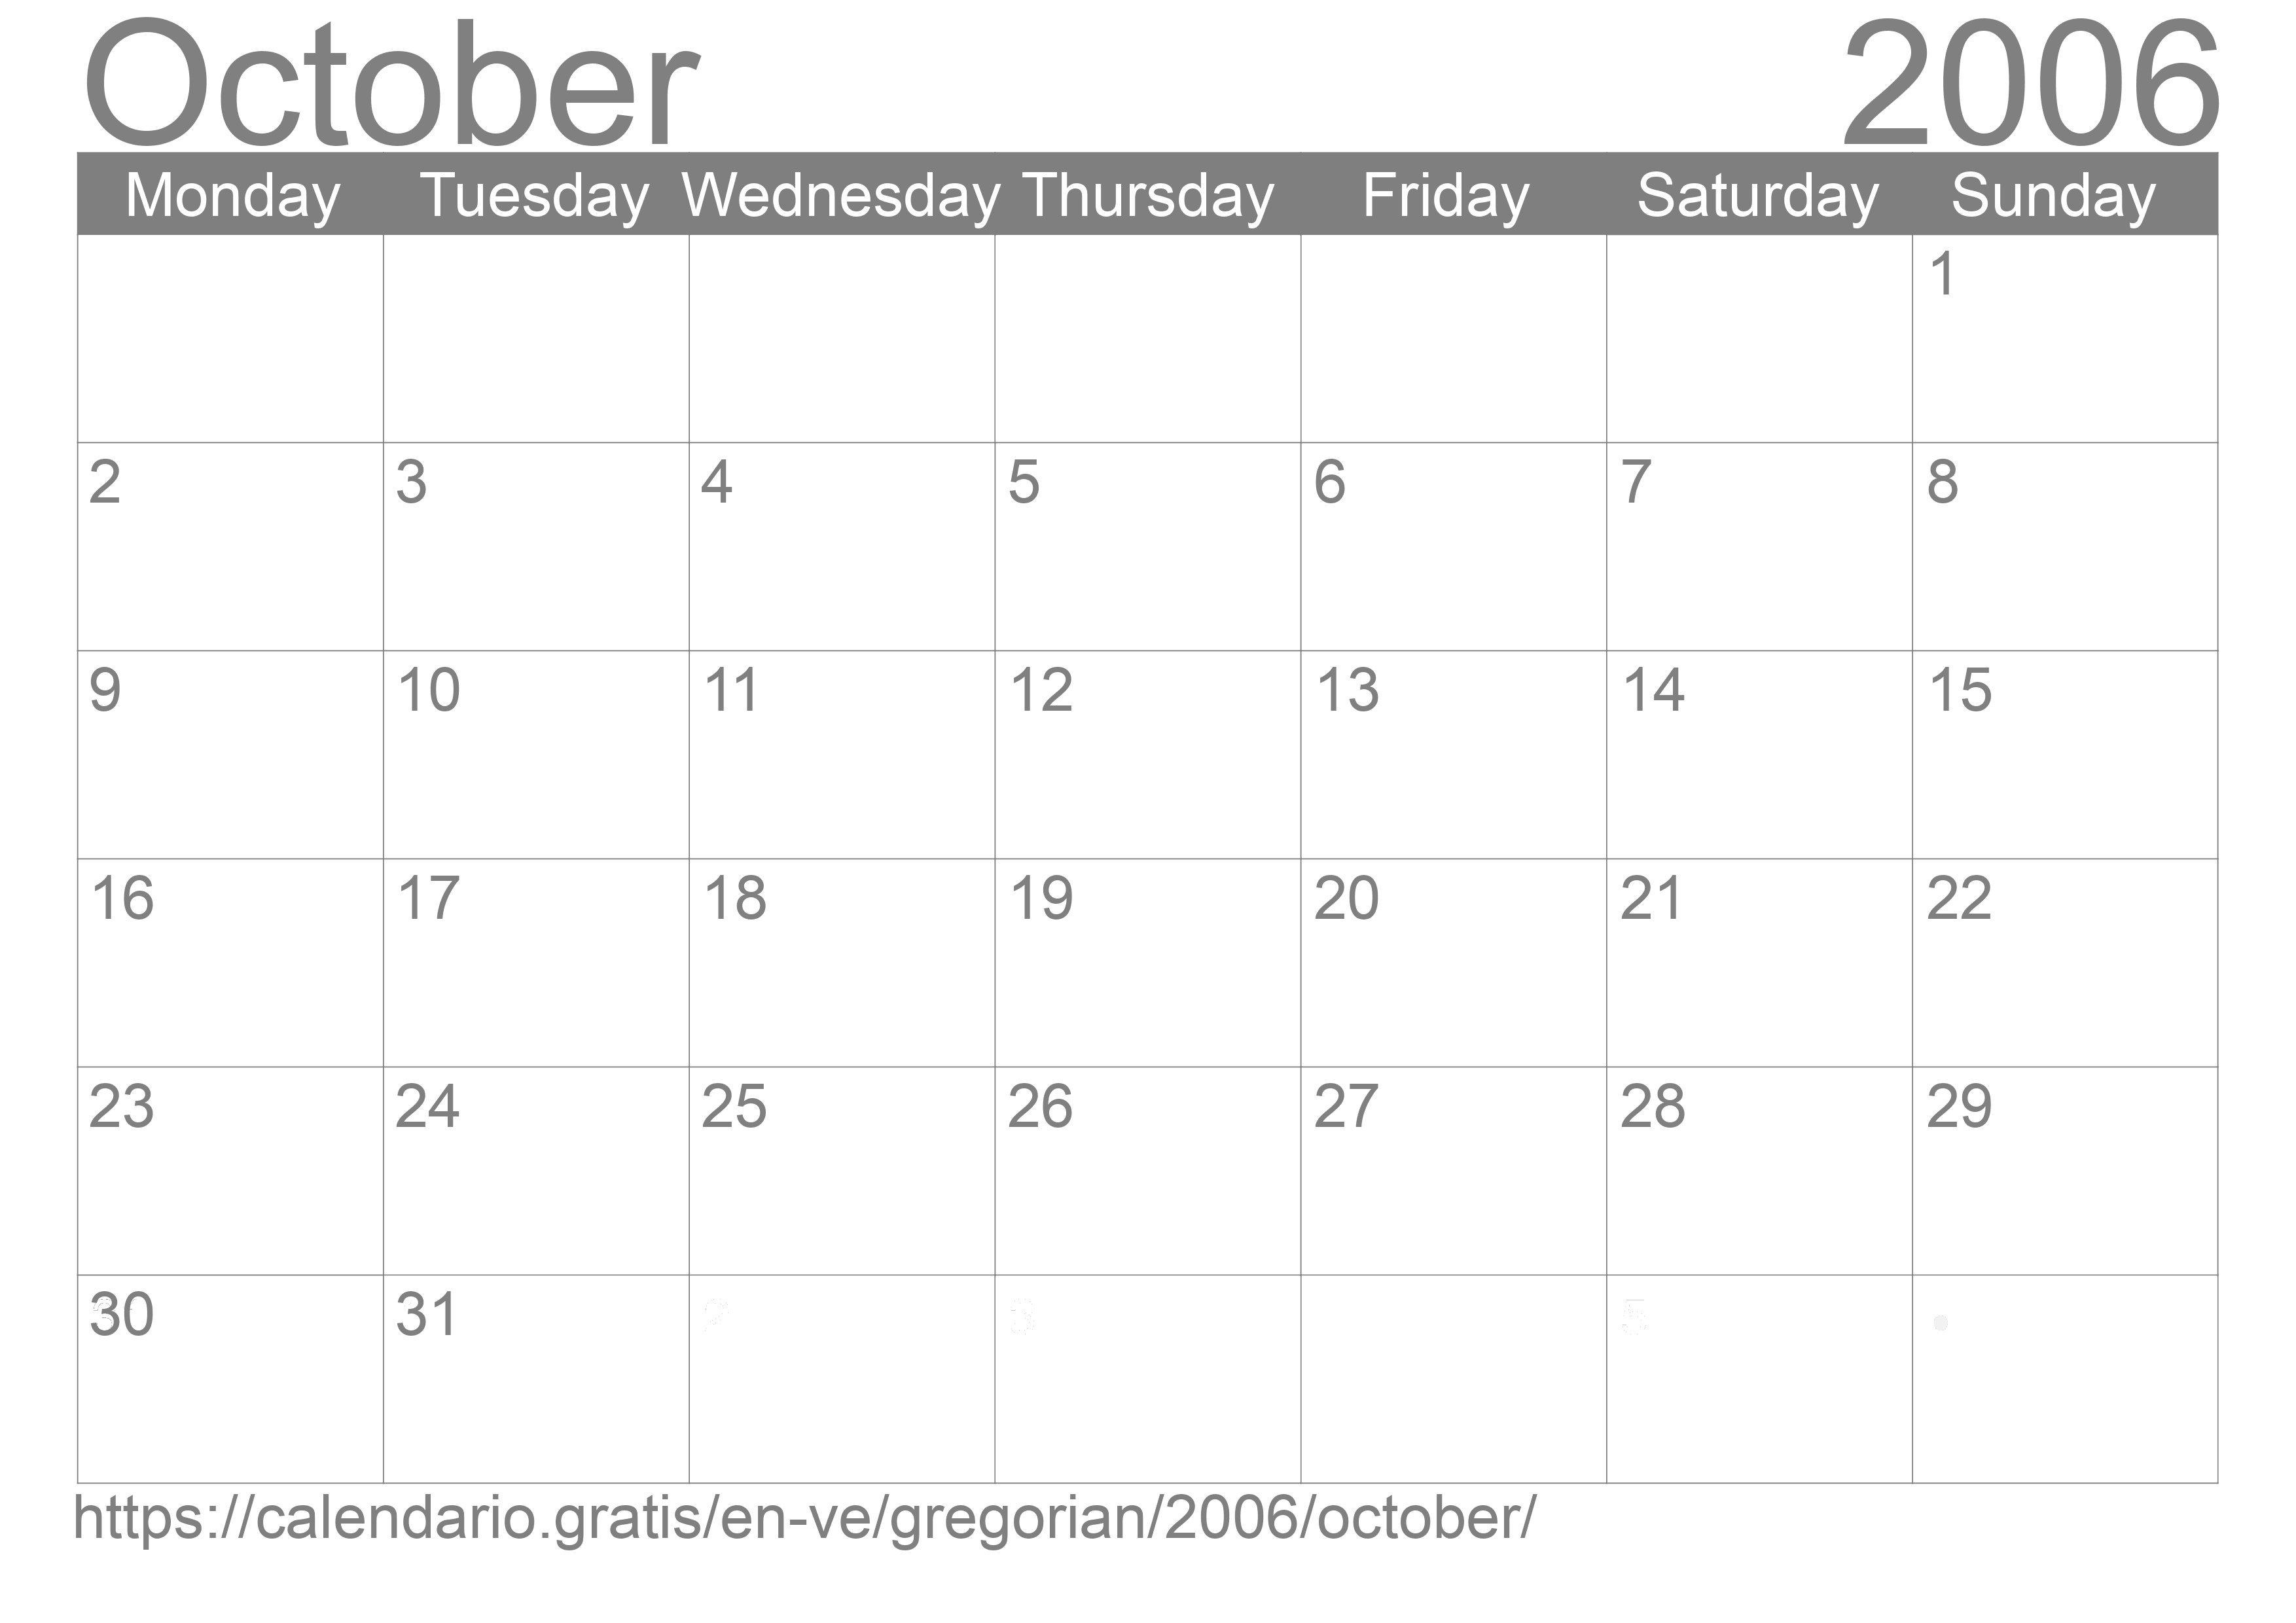 Calendar October 2006 to print